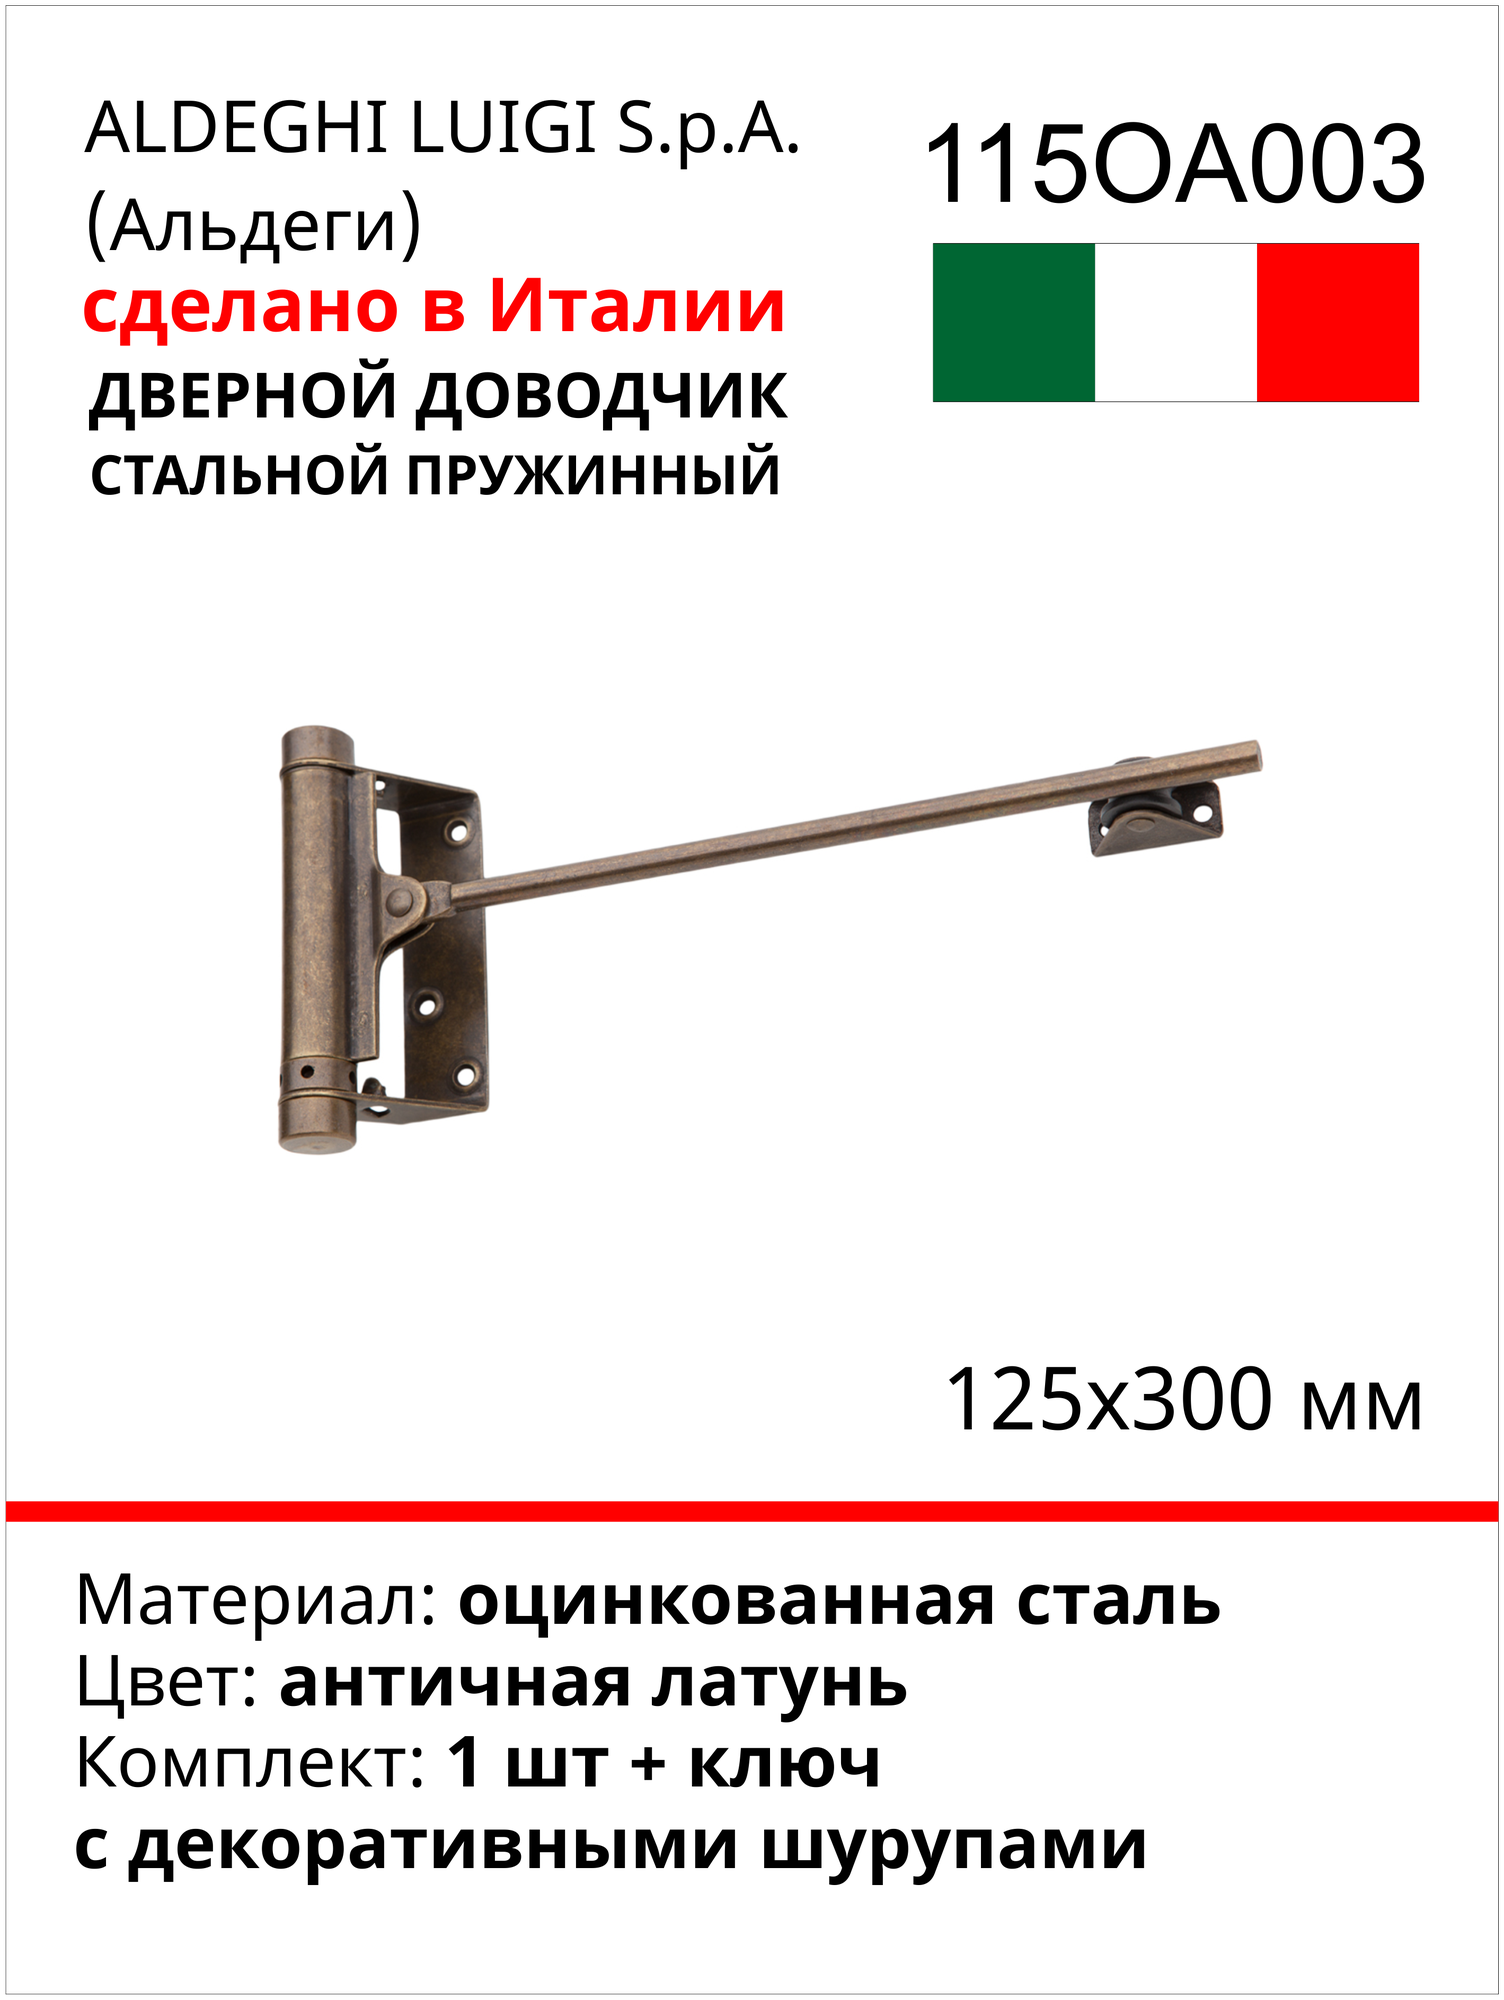 Дверной доводчик ALDEGHI LUIGI SPA стальной, пружинный, 125х300 мм, цвет: античная латунь, к-т: 1 шт + ключ с декоративными шурупами 115OA003 - фотография № 2